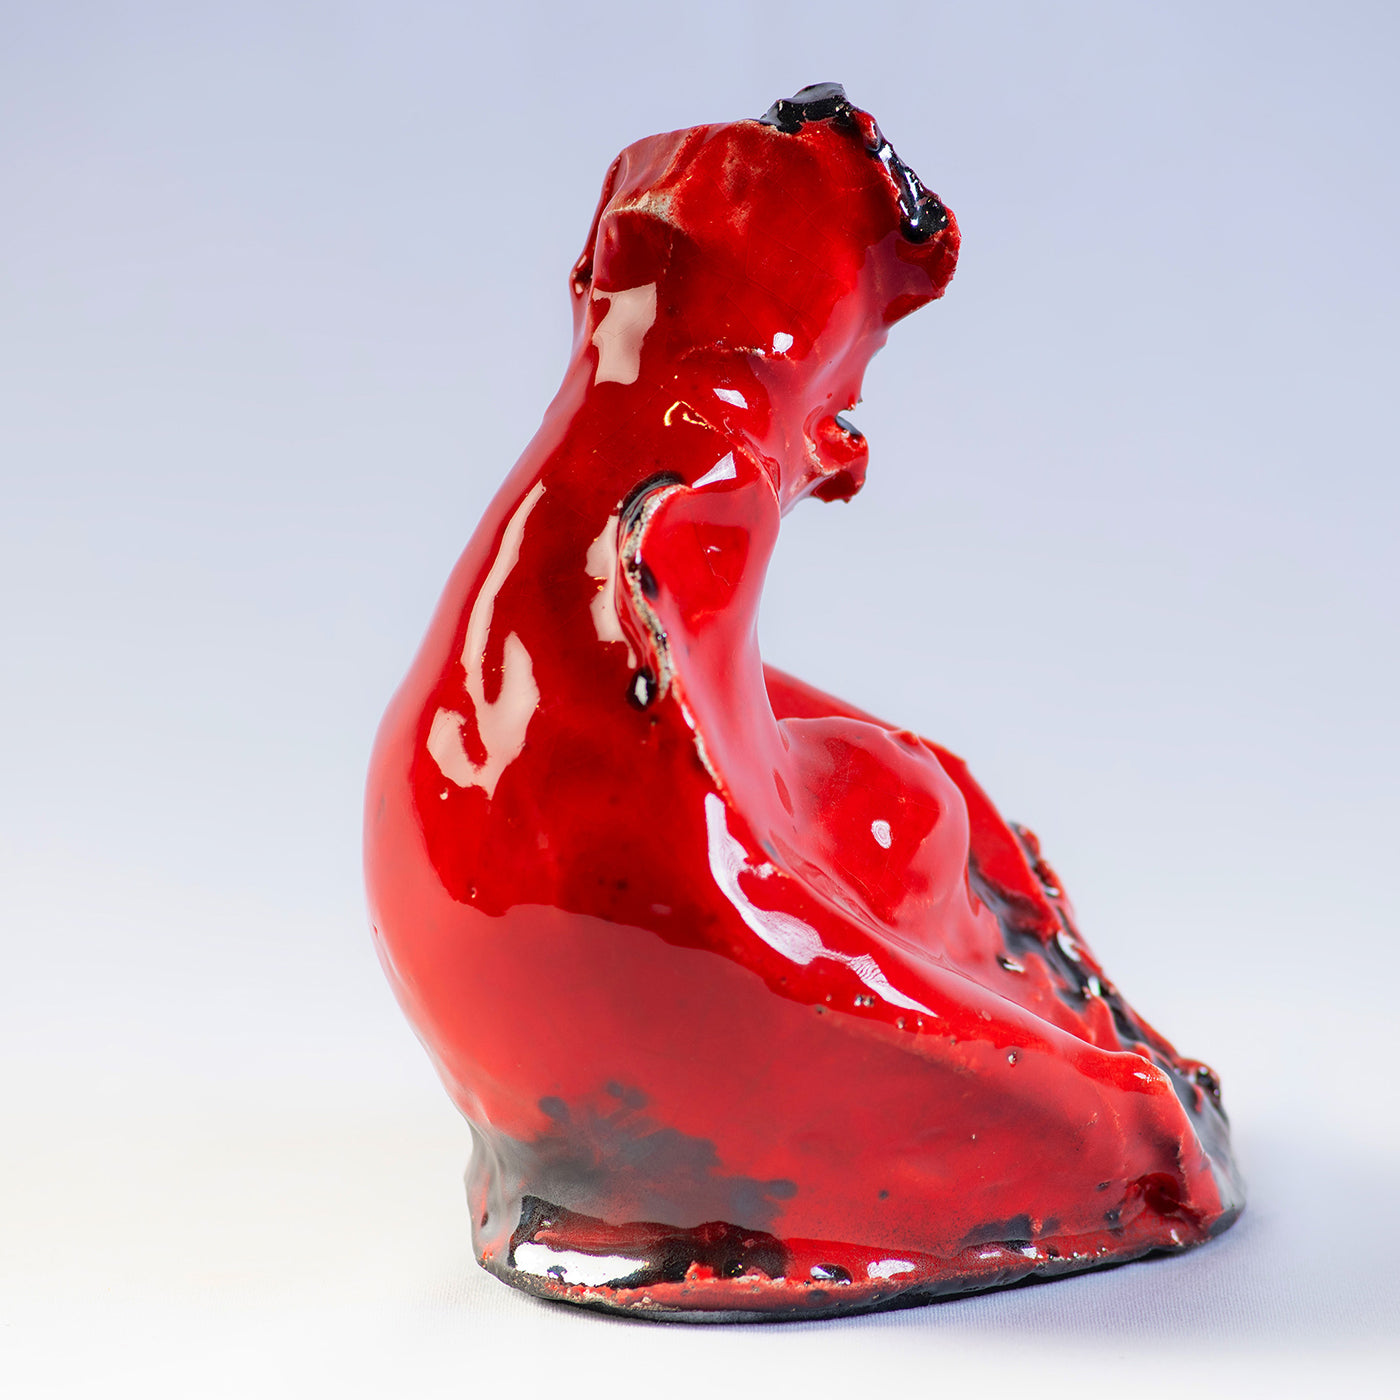 Cuore Di Madre Red Sculpture - Alternative view 1